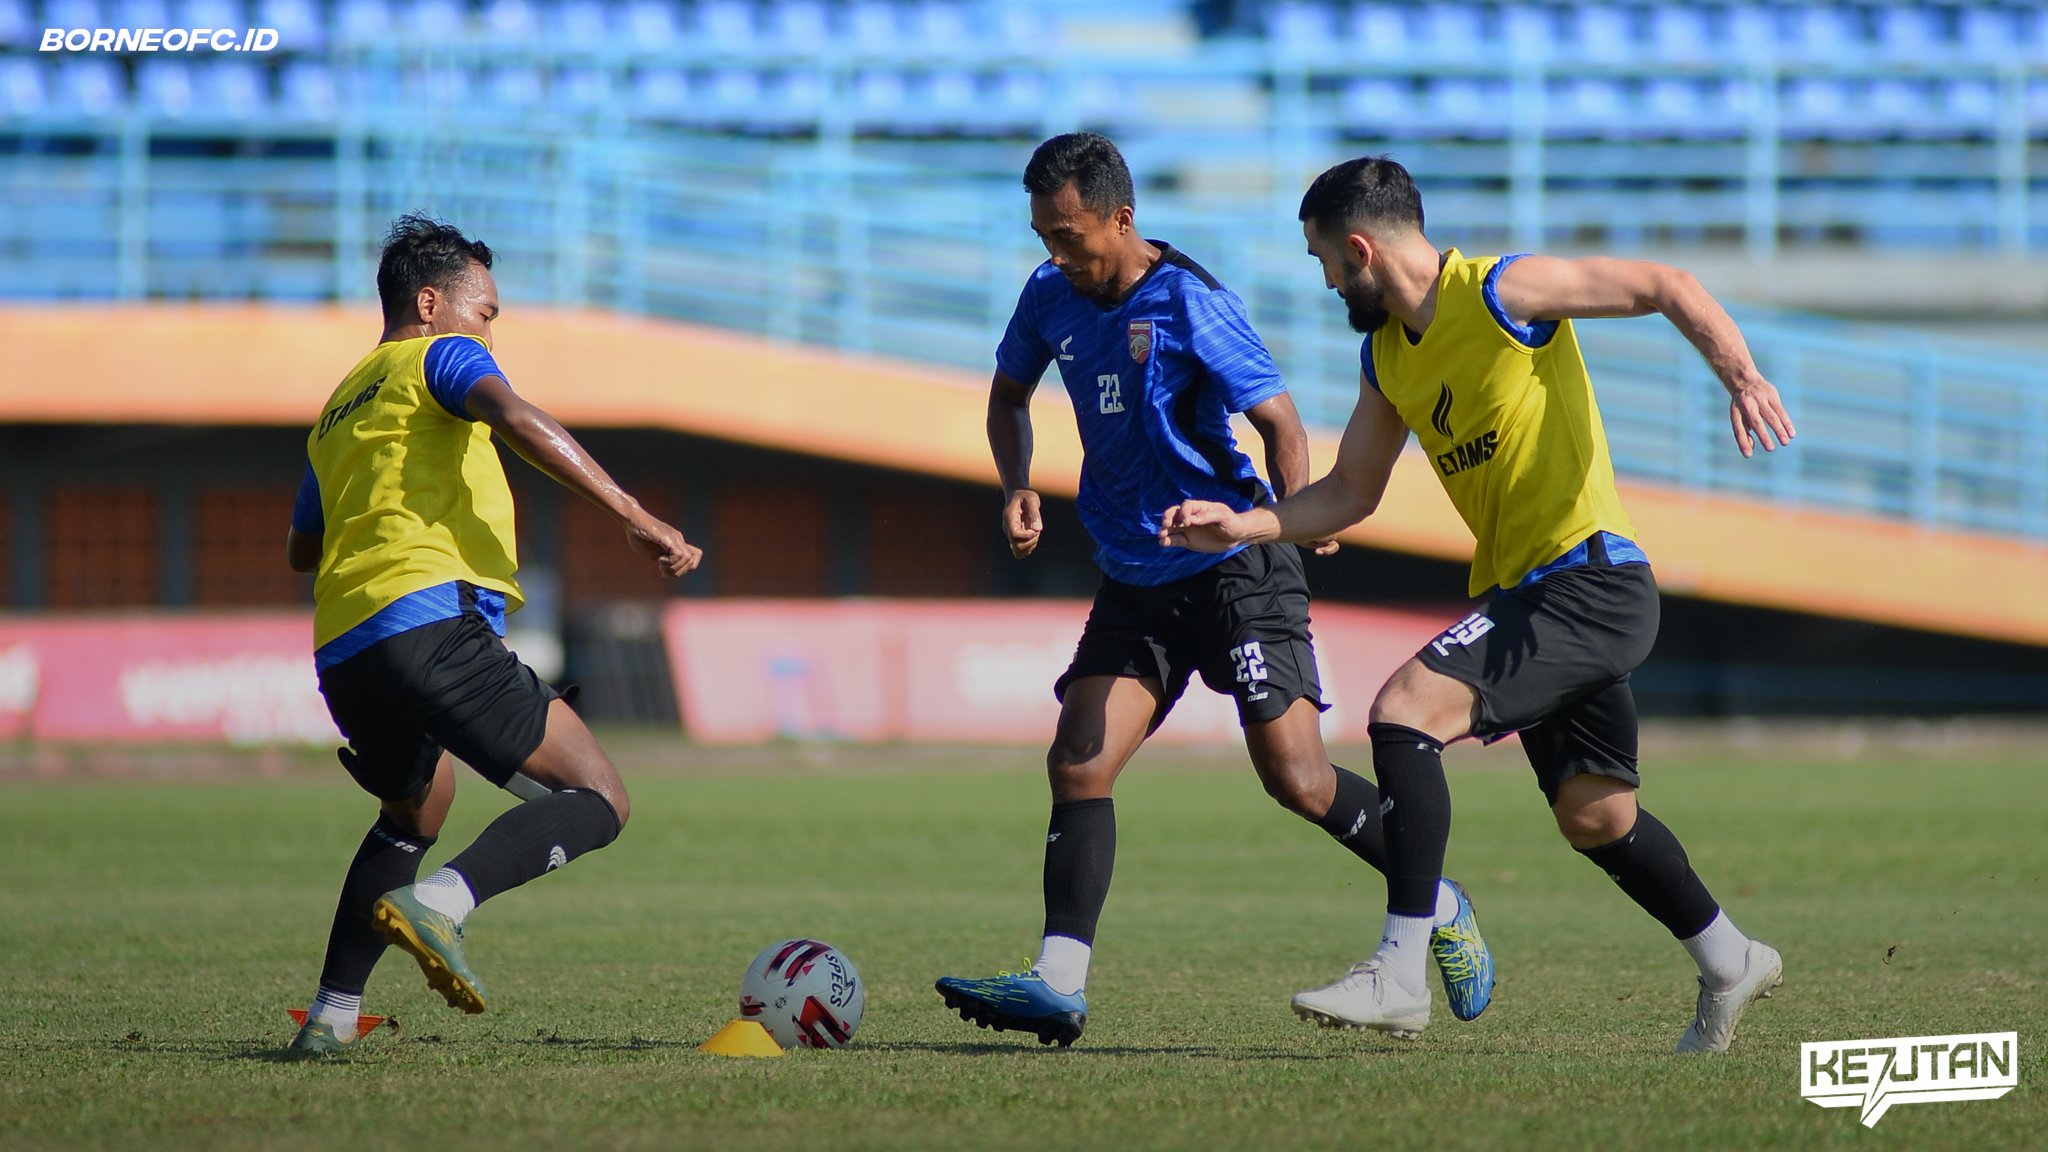 Borneo FC Kekuatan Penuh, Bawa Dua Pemain yang Cedera ke Piala Menpora 2021